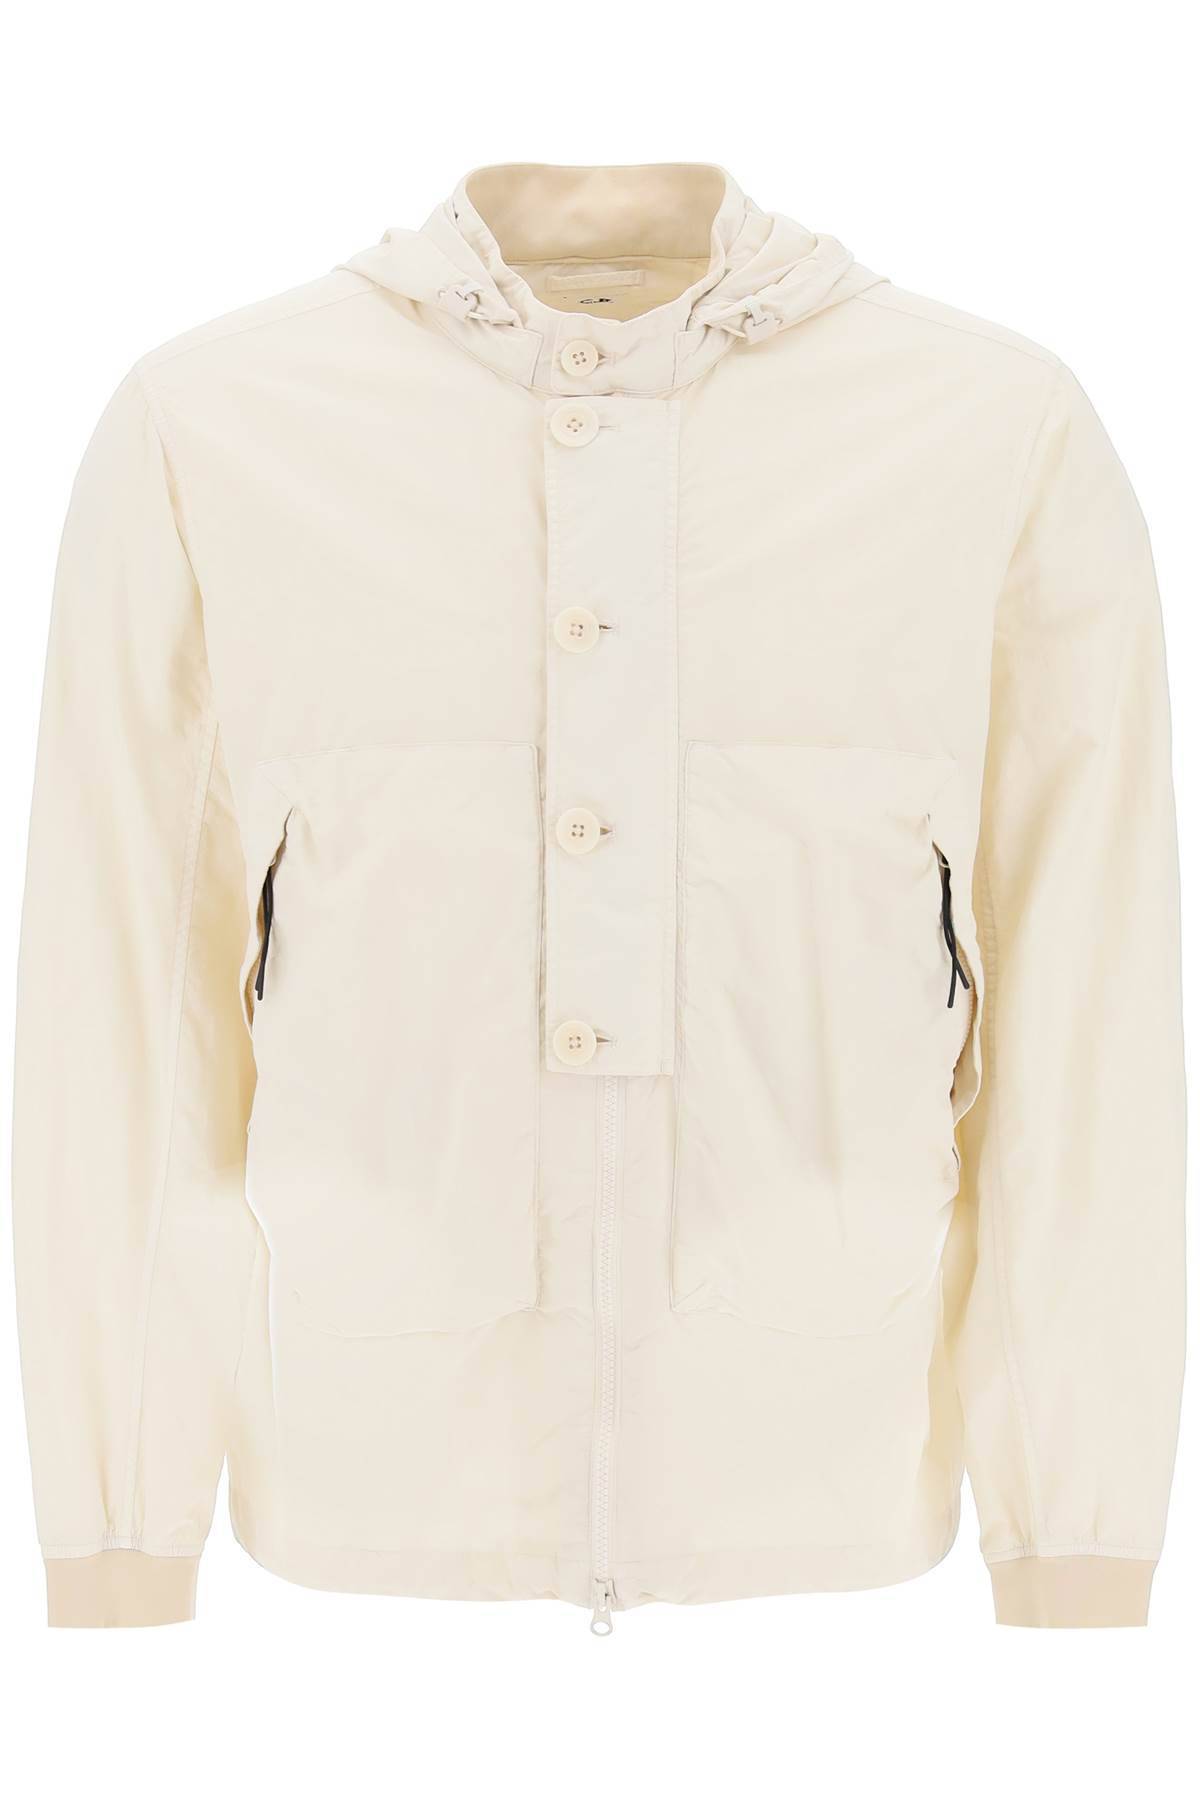 CP COMPANY CP COMPANY "flatt nylon goggle jacket